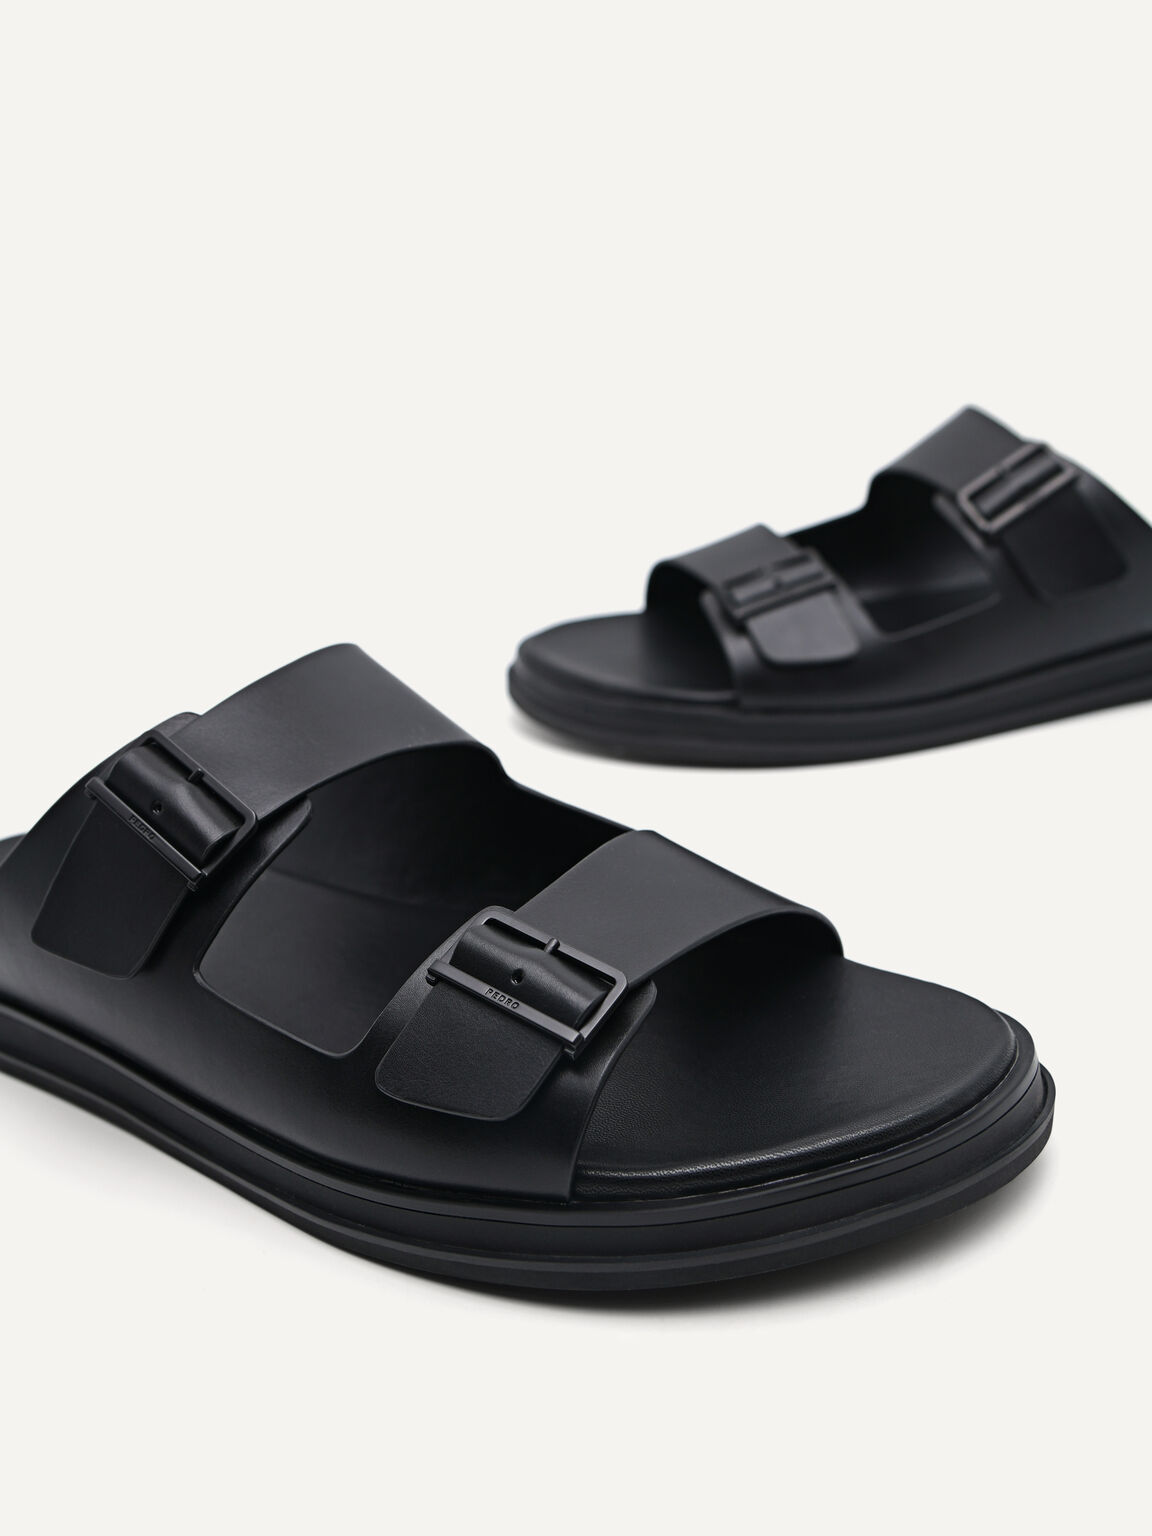 Monochrome Double Strap Slide Sandals, Black